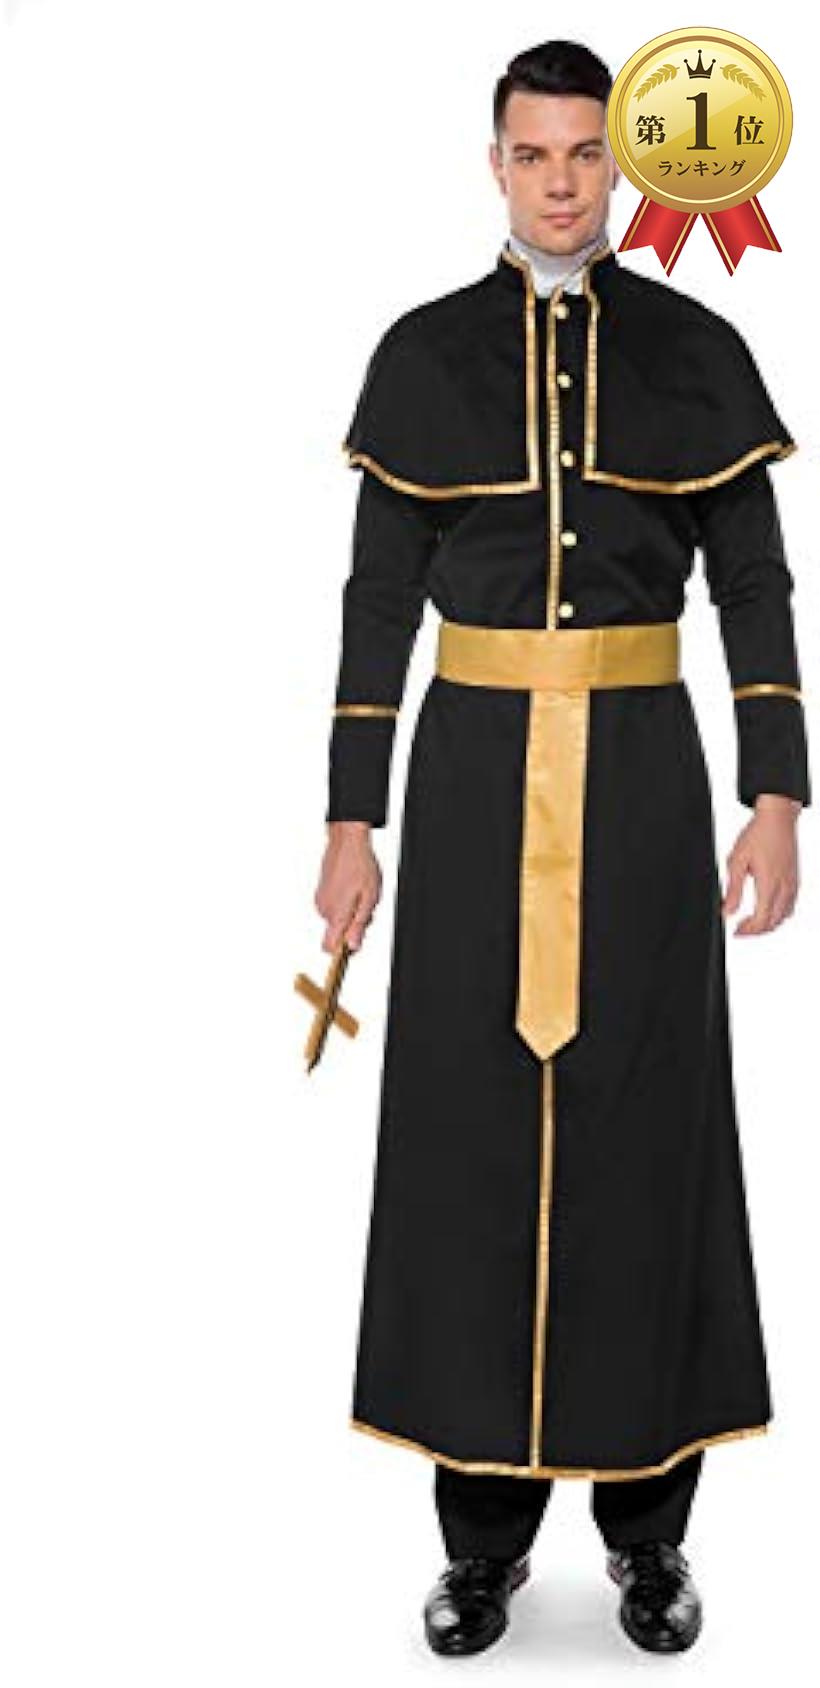  神父 コスプレ 宣教師 コスチューム 修道士 衣装 司祭 仮装 メンズ キリスト Lサイズ